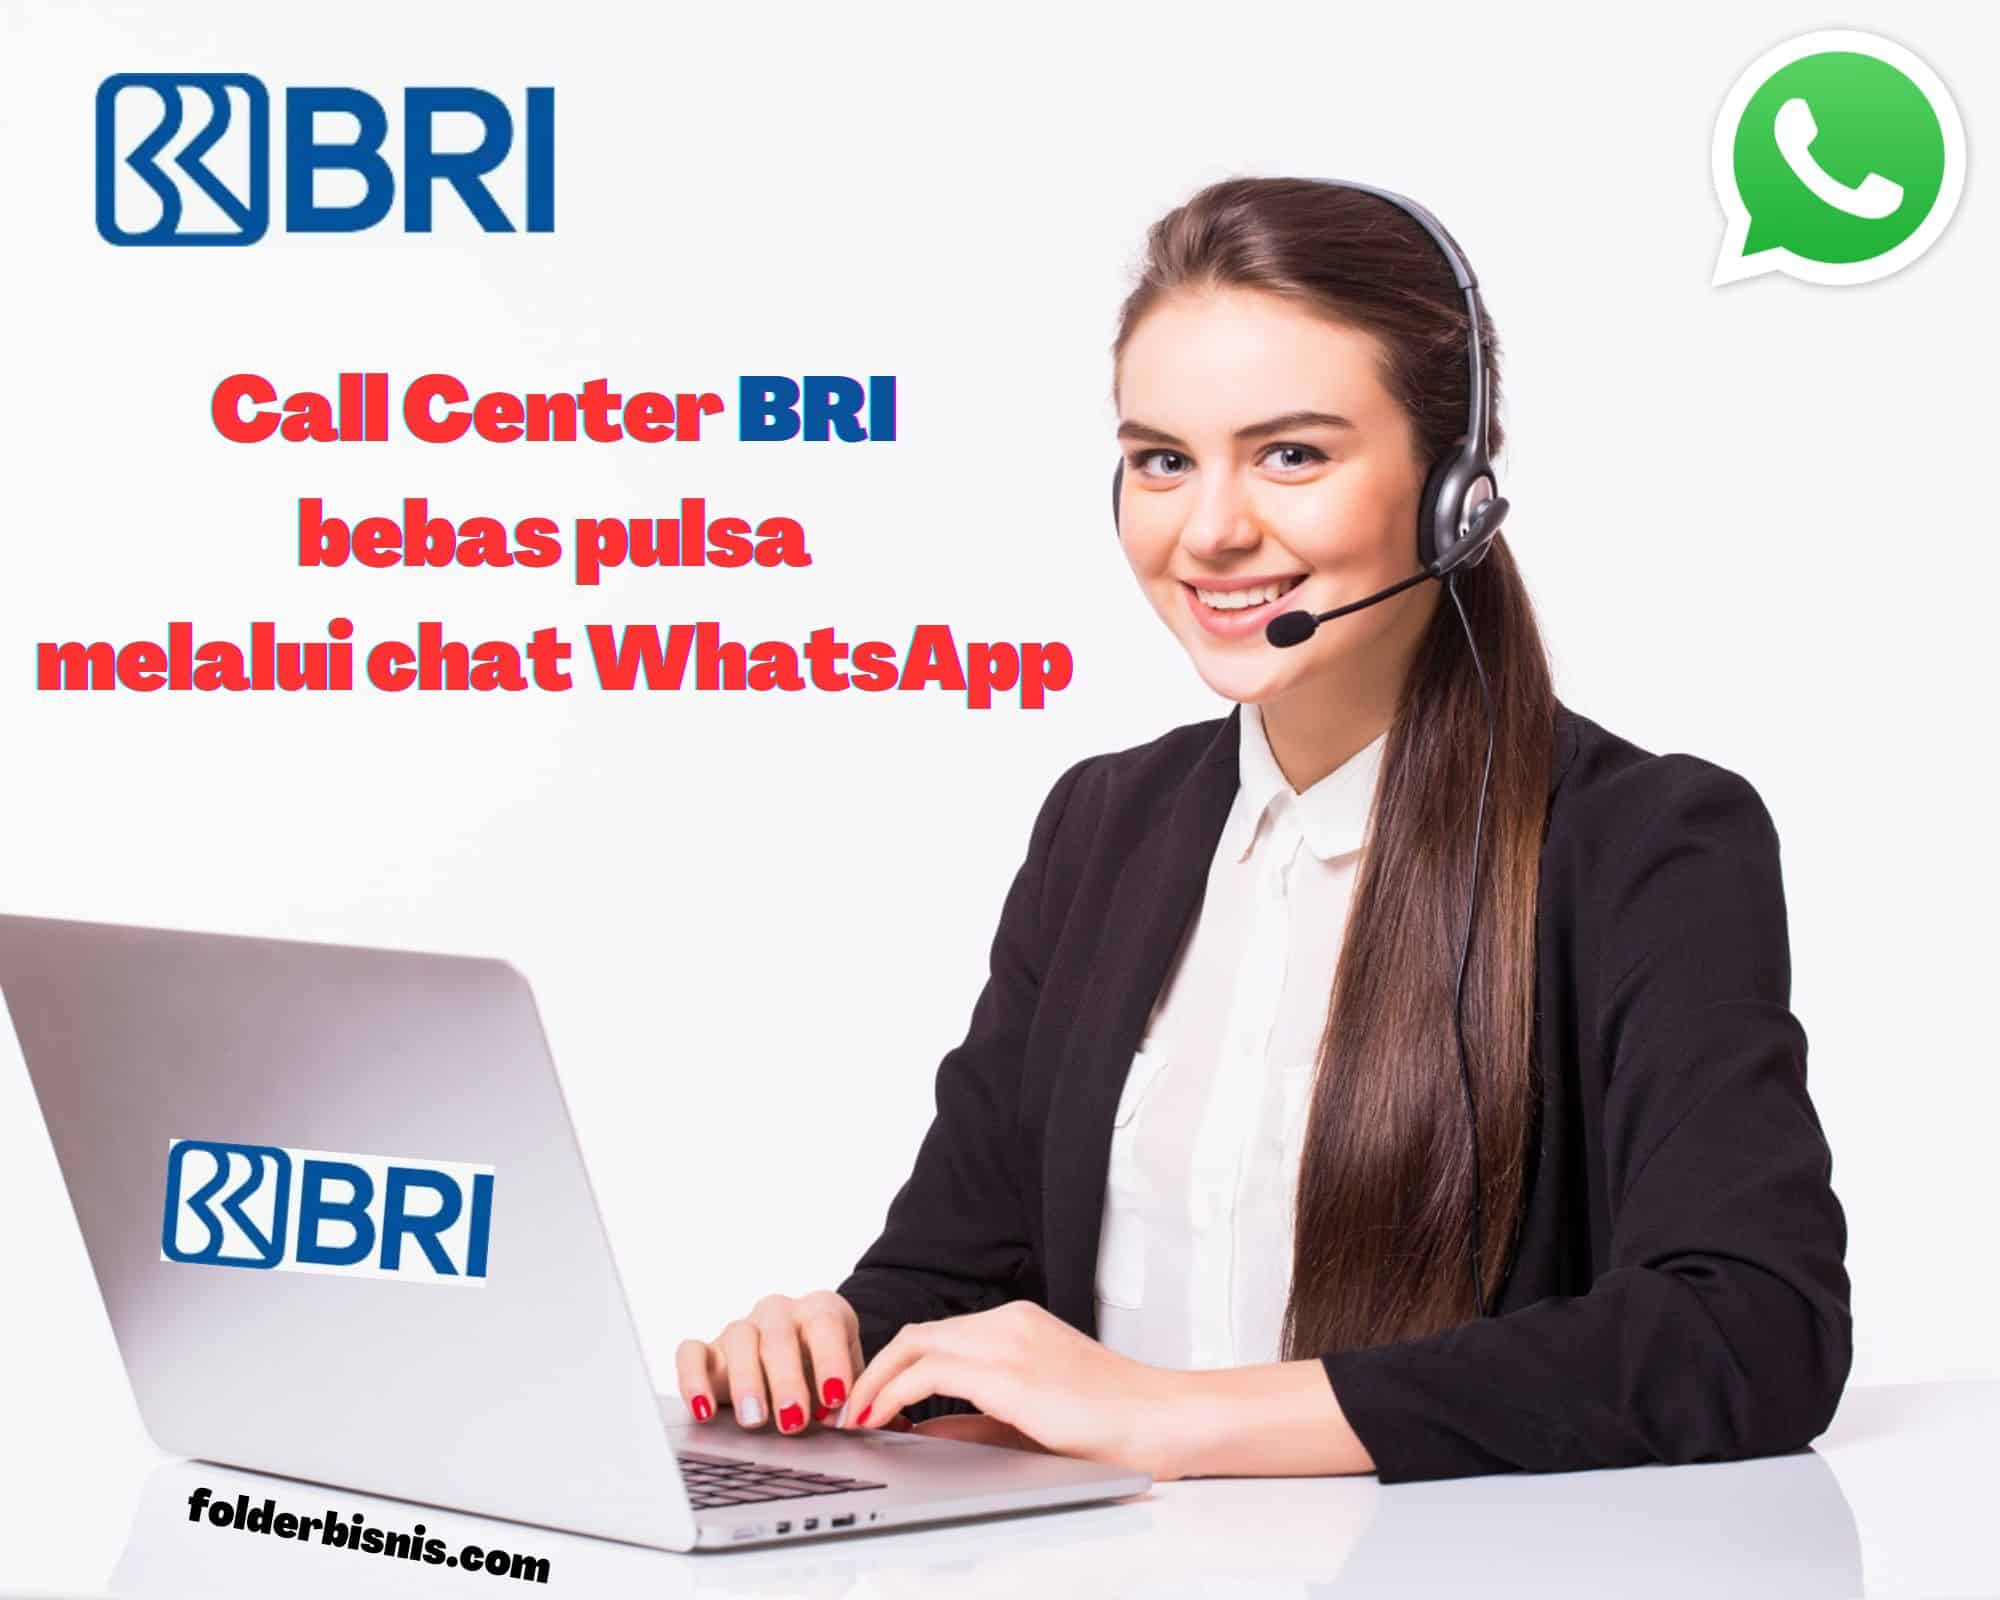 Call Center BRI WhatsApp Bebas Pulsa, Begini Cara Menghubunginya